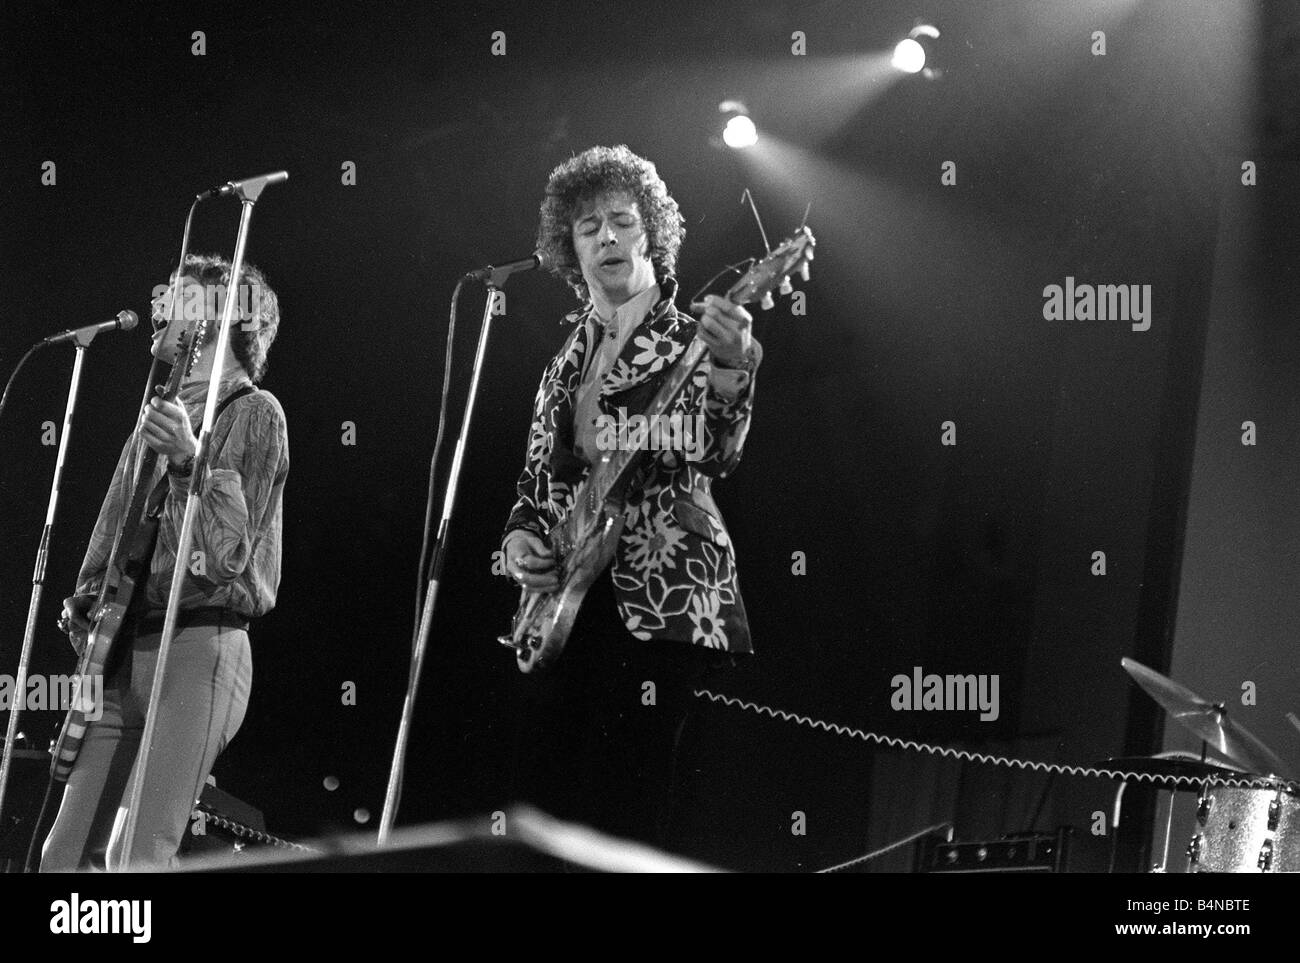 Groupe de rock progressiste Cream Avril 1967 Eric Clapton, Jack Bruce apparaissant sur scène à Wembley en assciation avec étoile Organisation avec Spastics légende locale retromusic Banque D'Images